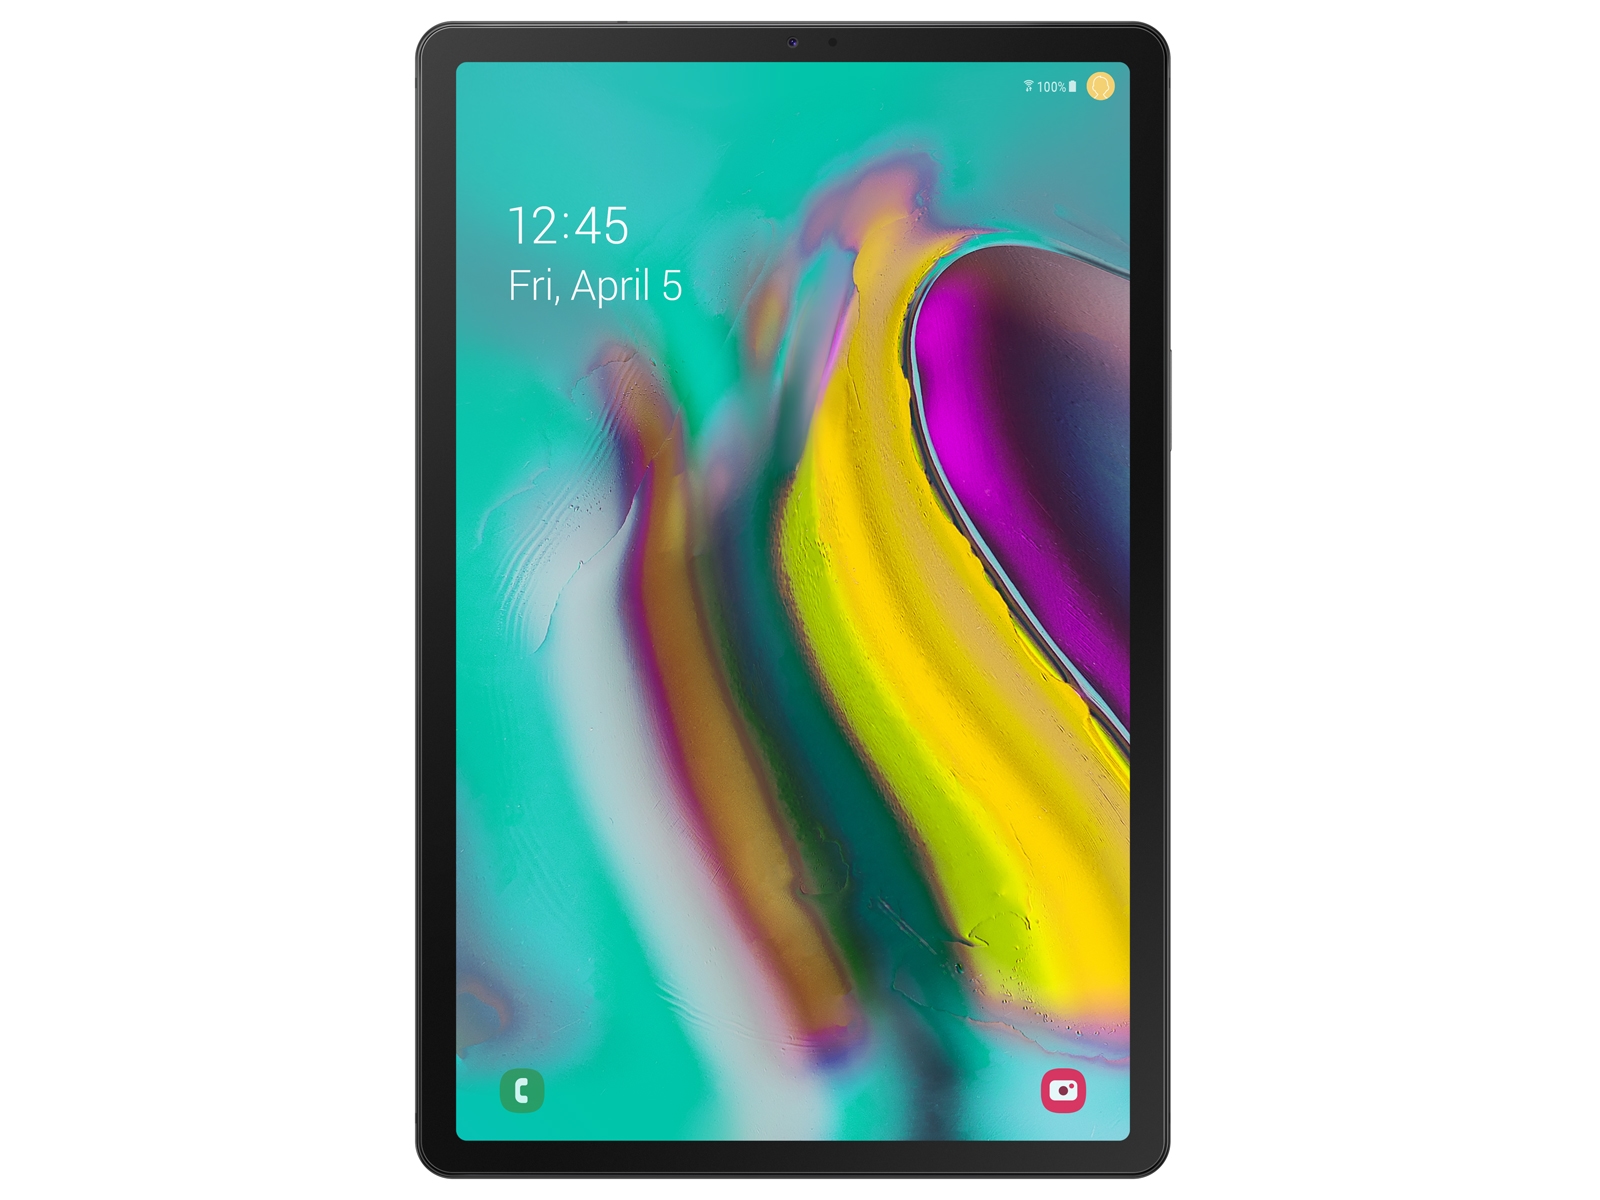 Galaxy Tab S5e 10.5, 64GB, Black (Wi-Fi) Tablets - SM-T720NZKAXAR 